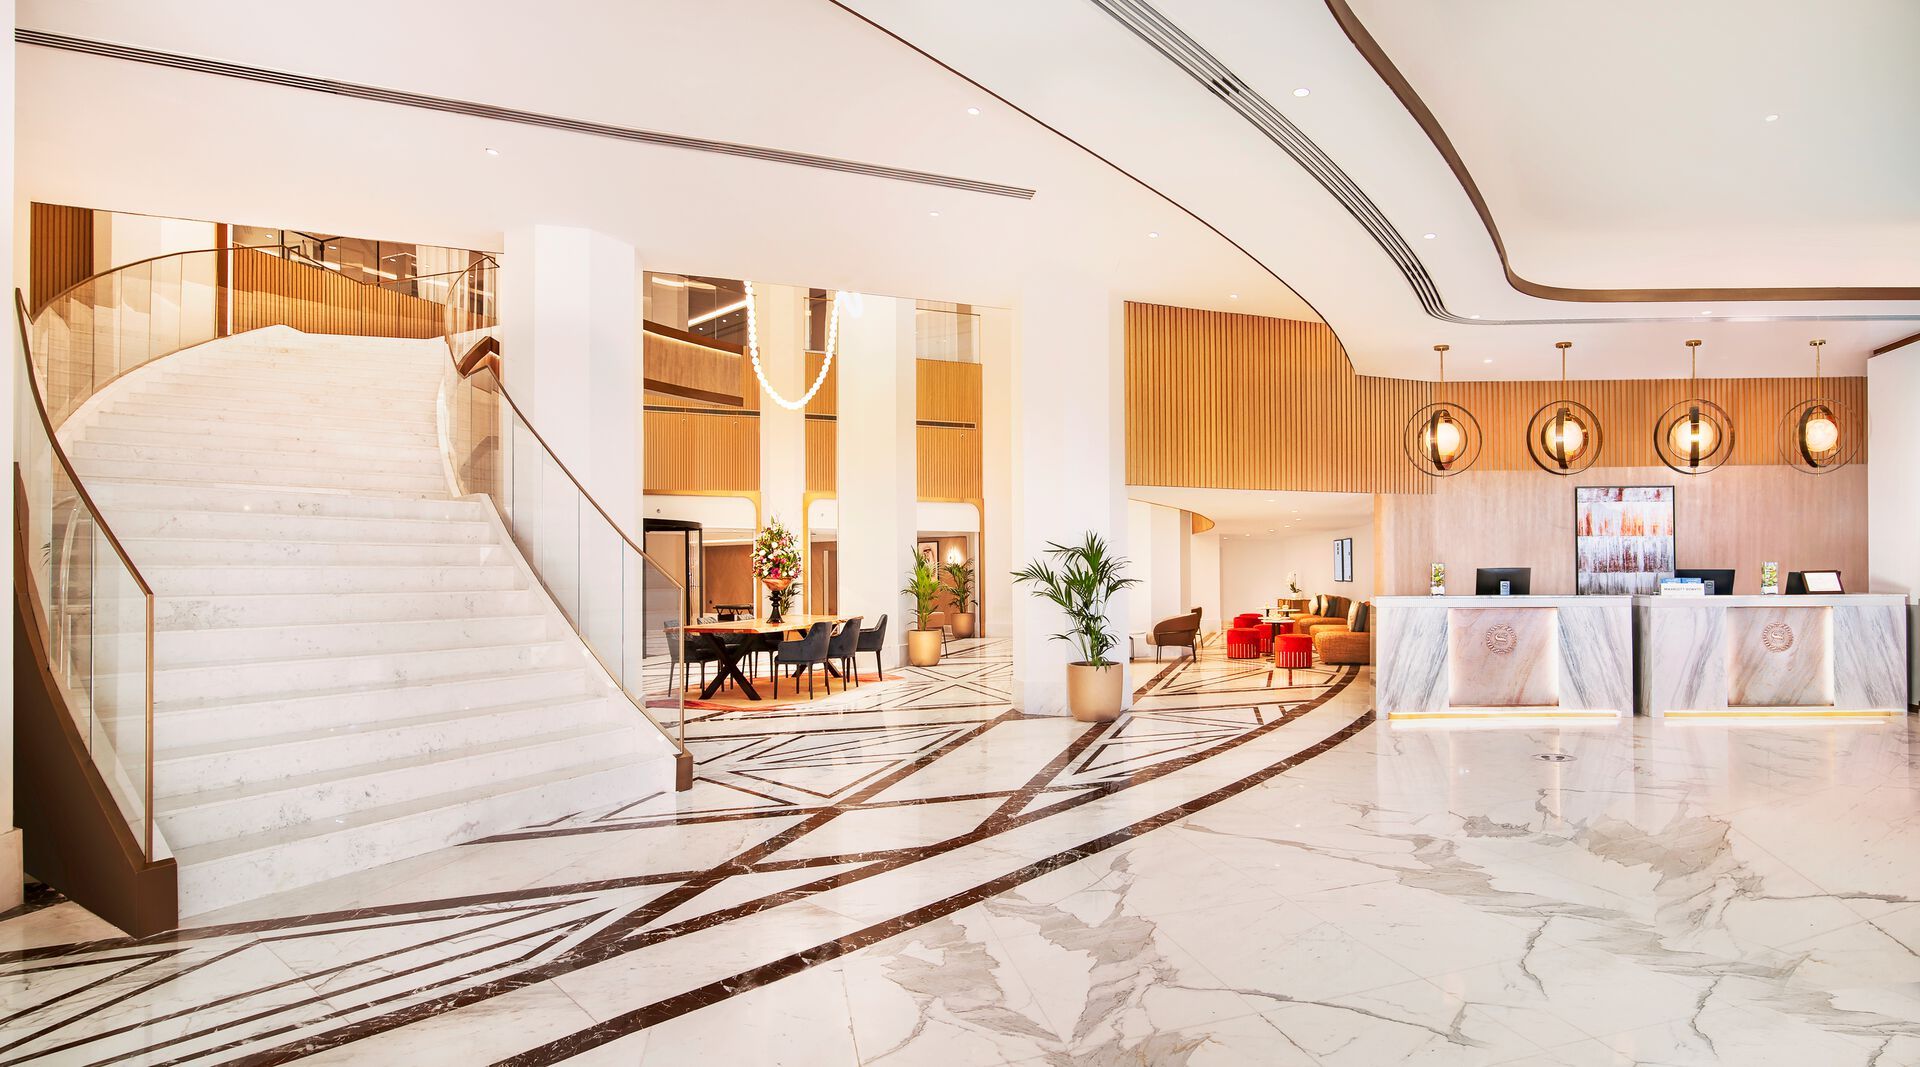 Emirats Arabes Unis - Abu Dhabi - Hôtel Sheraton Abu Dhabi Hotel & Resort 5*